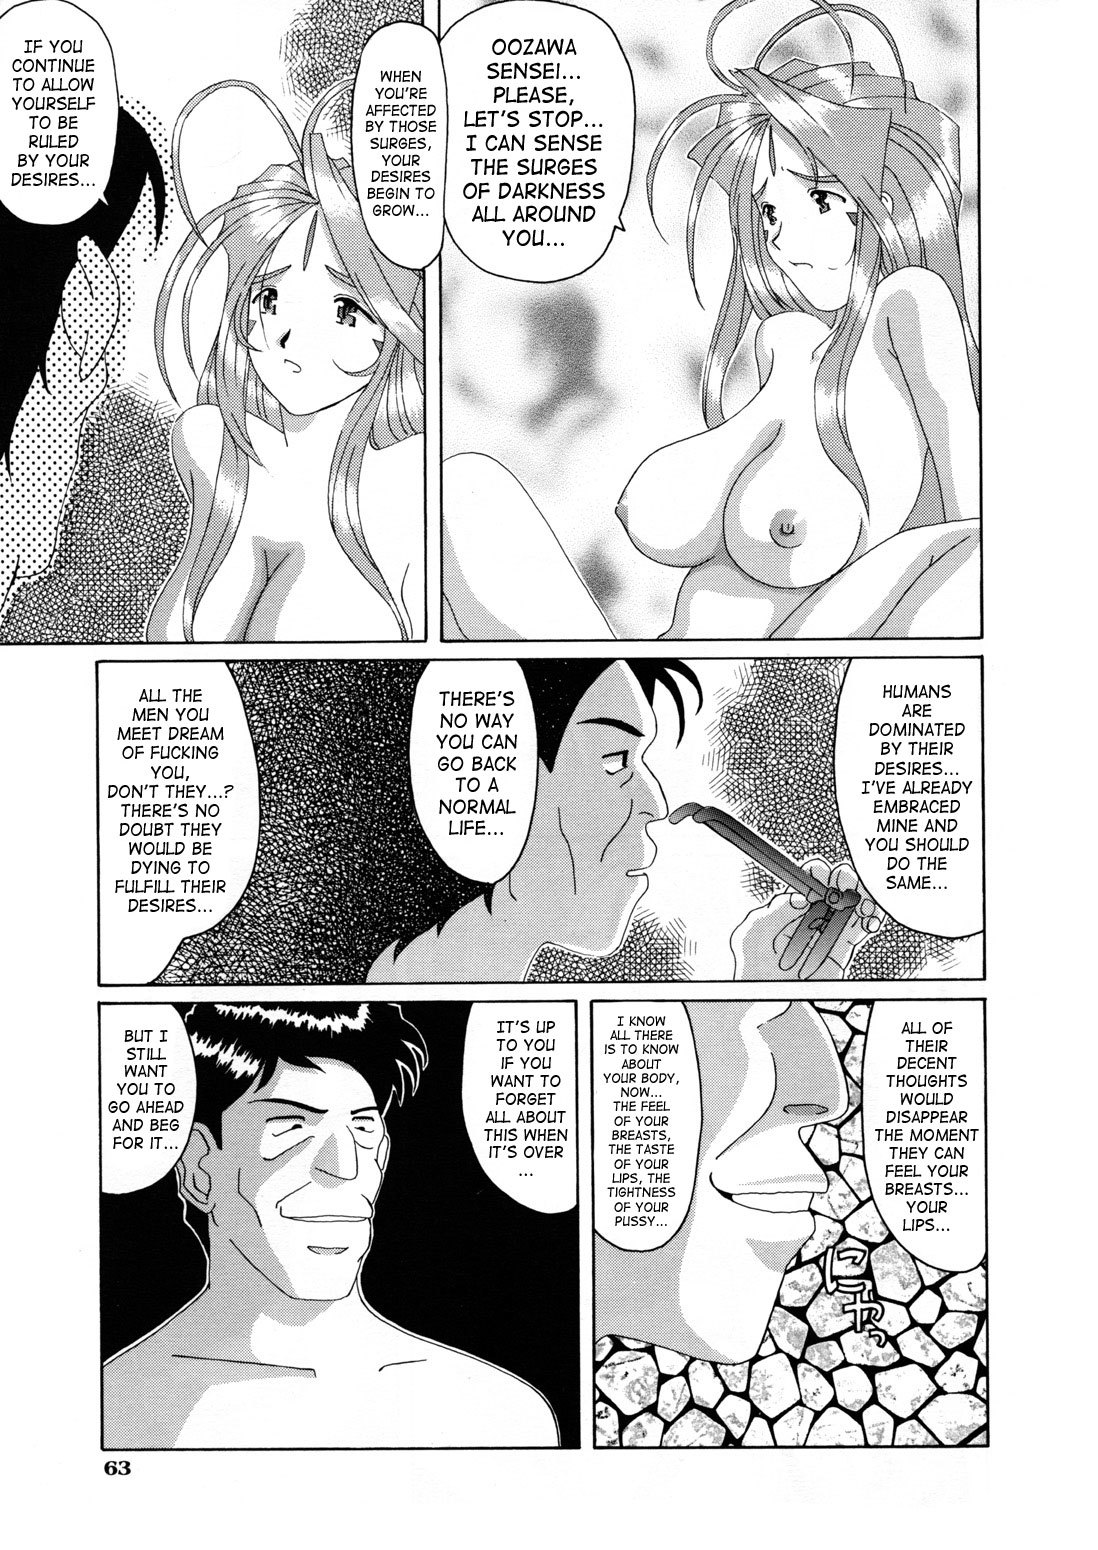 Nightmare of My Goddess Vol.3 ah my goddess 61 hentai manga